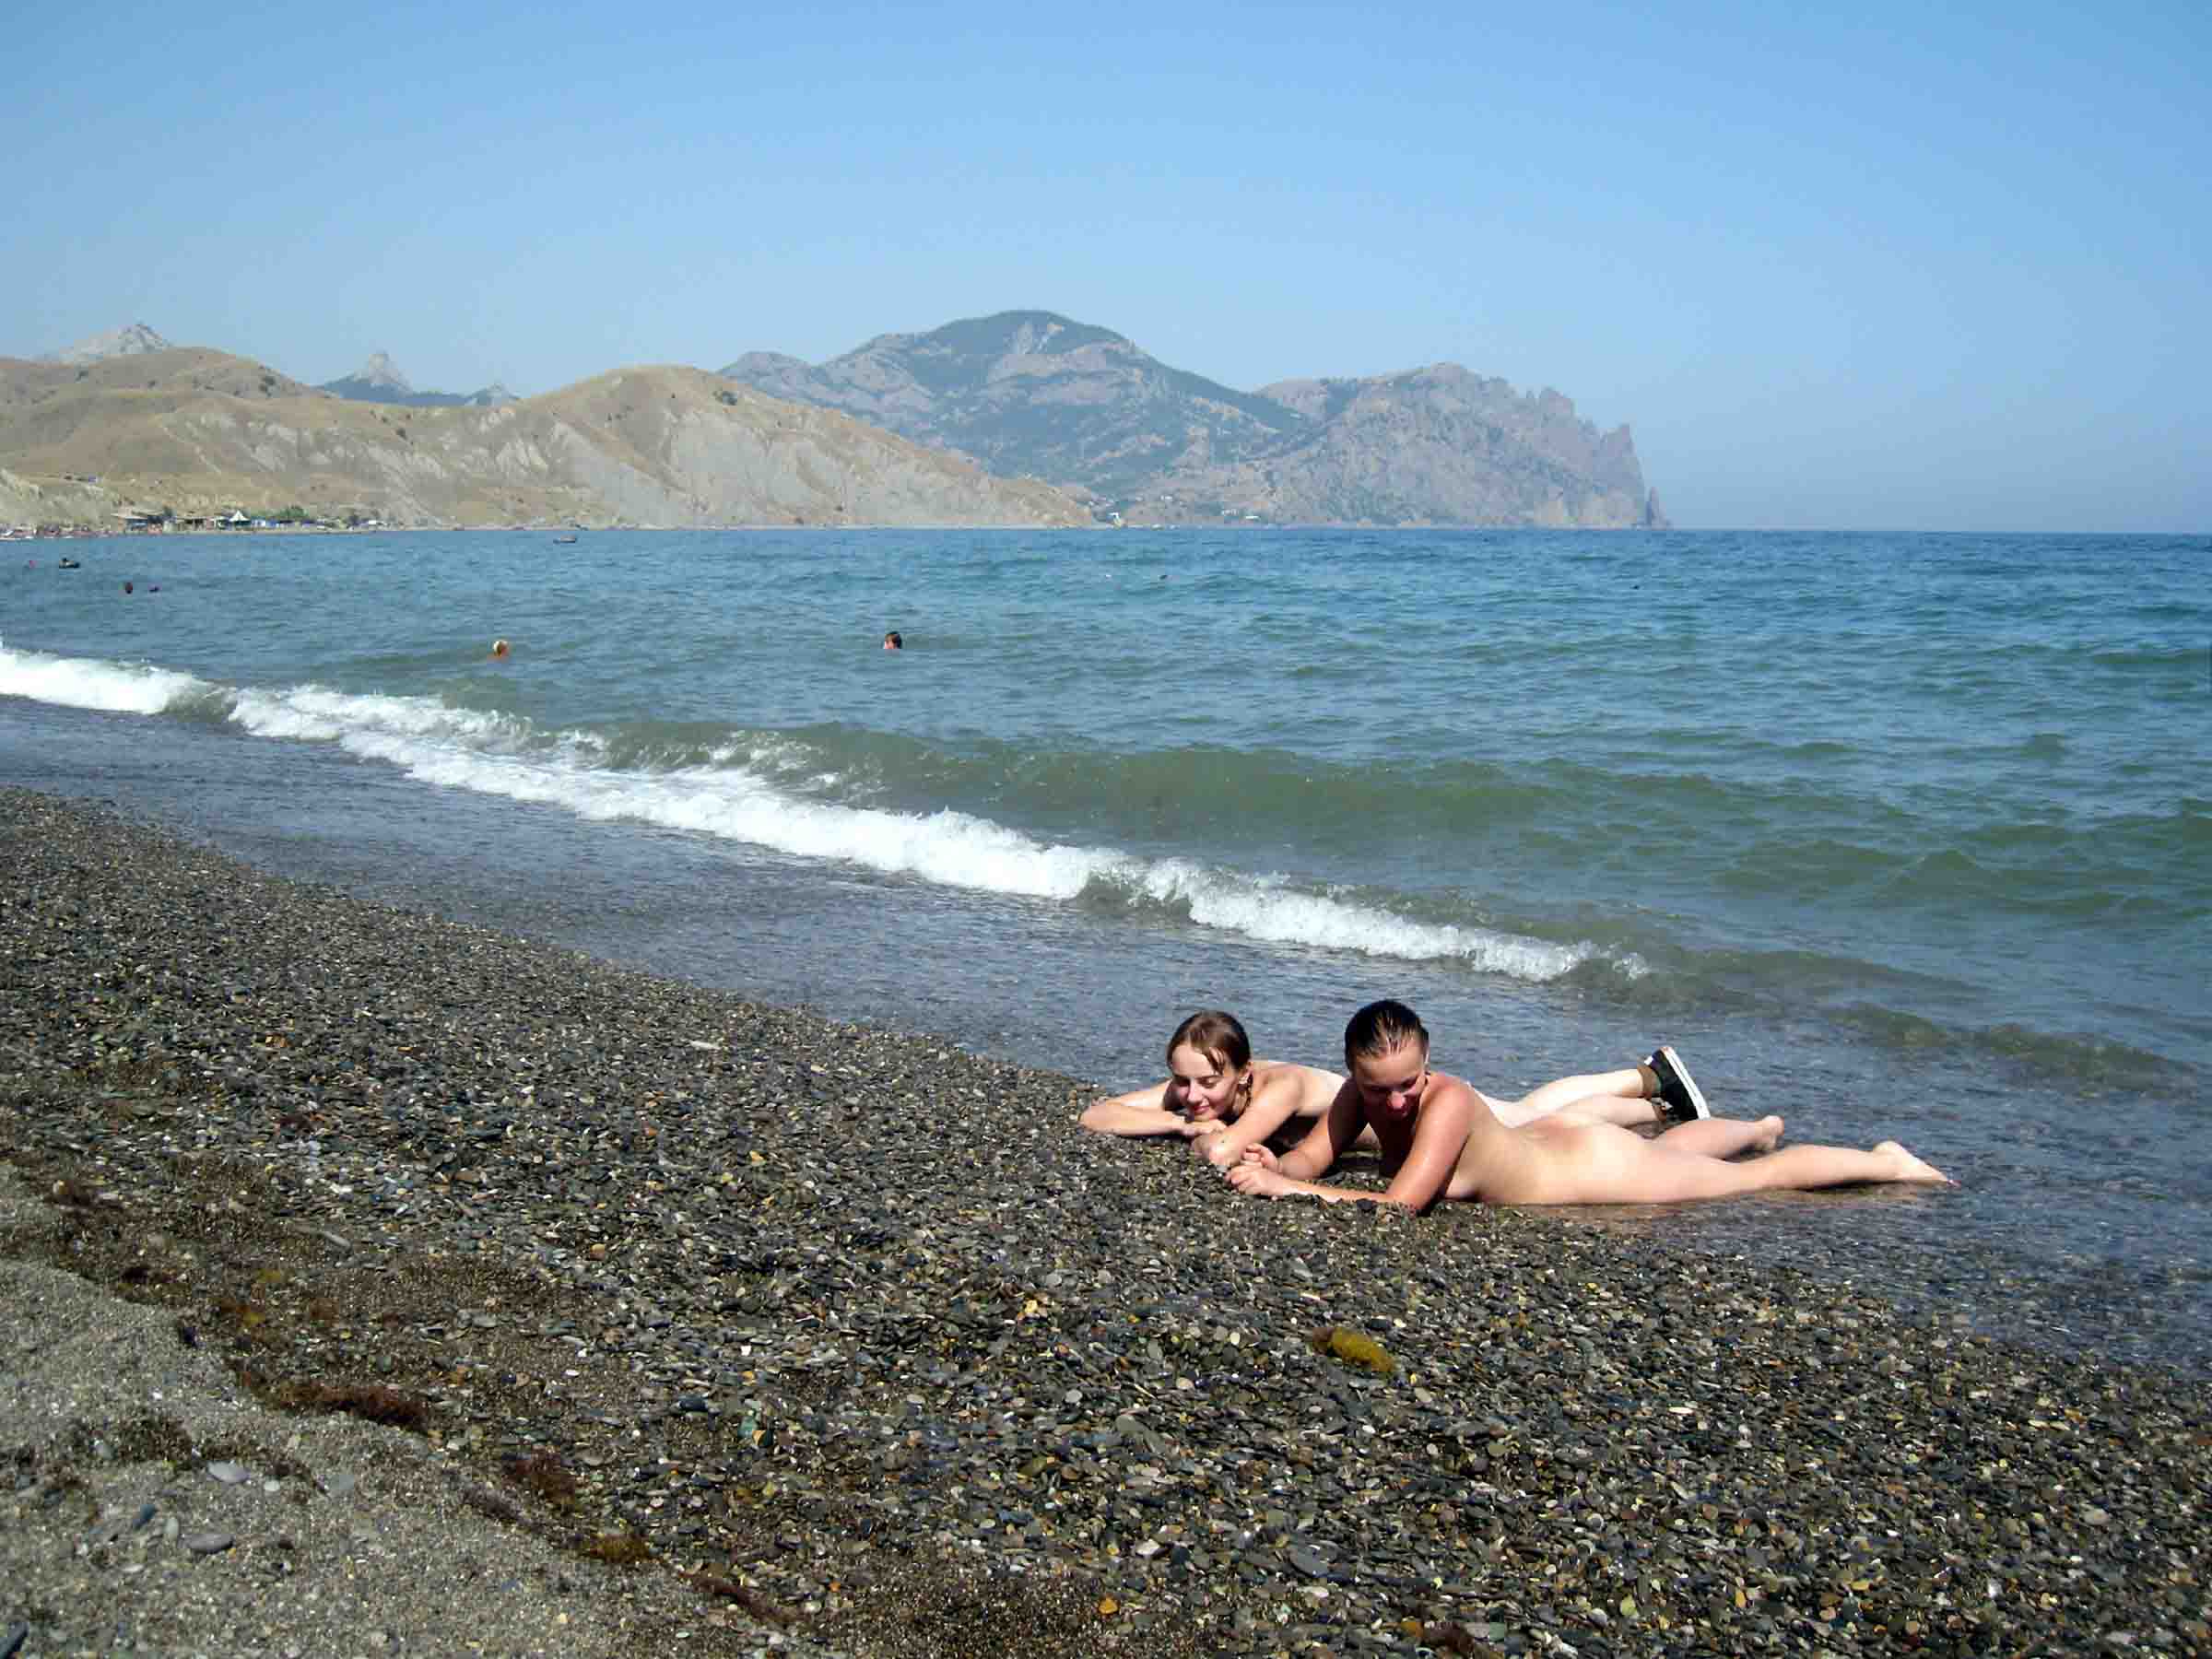 Лисья бухта - нудистский пляж в Крыму (26 фото) (эротика)